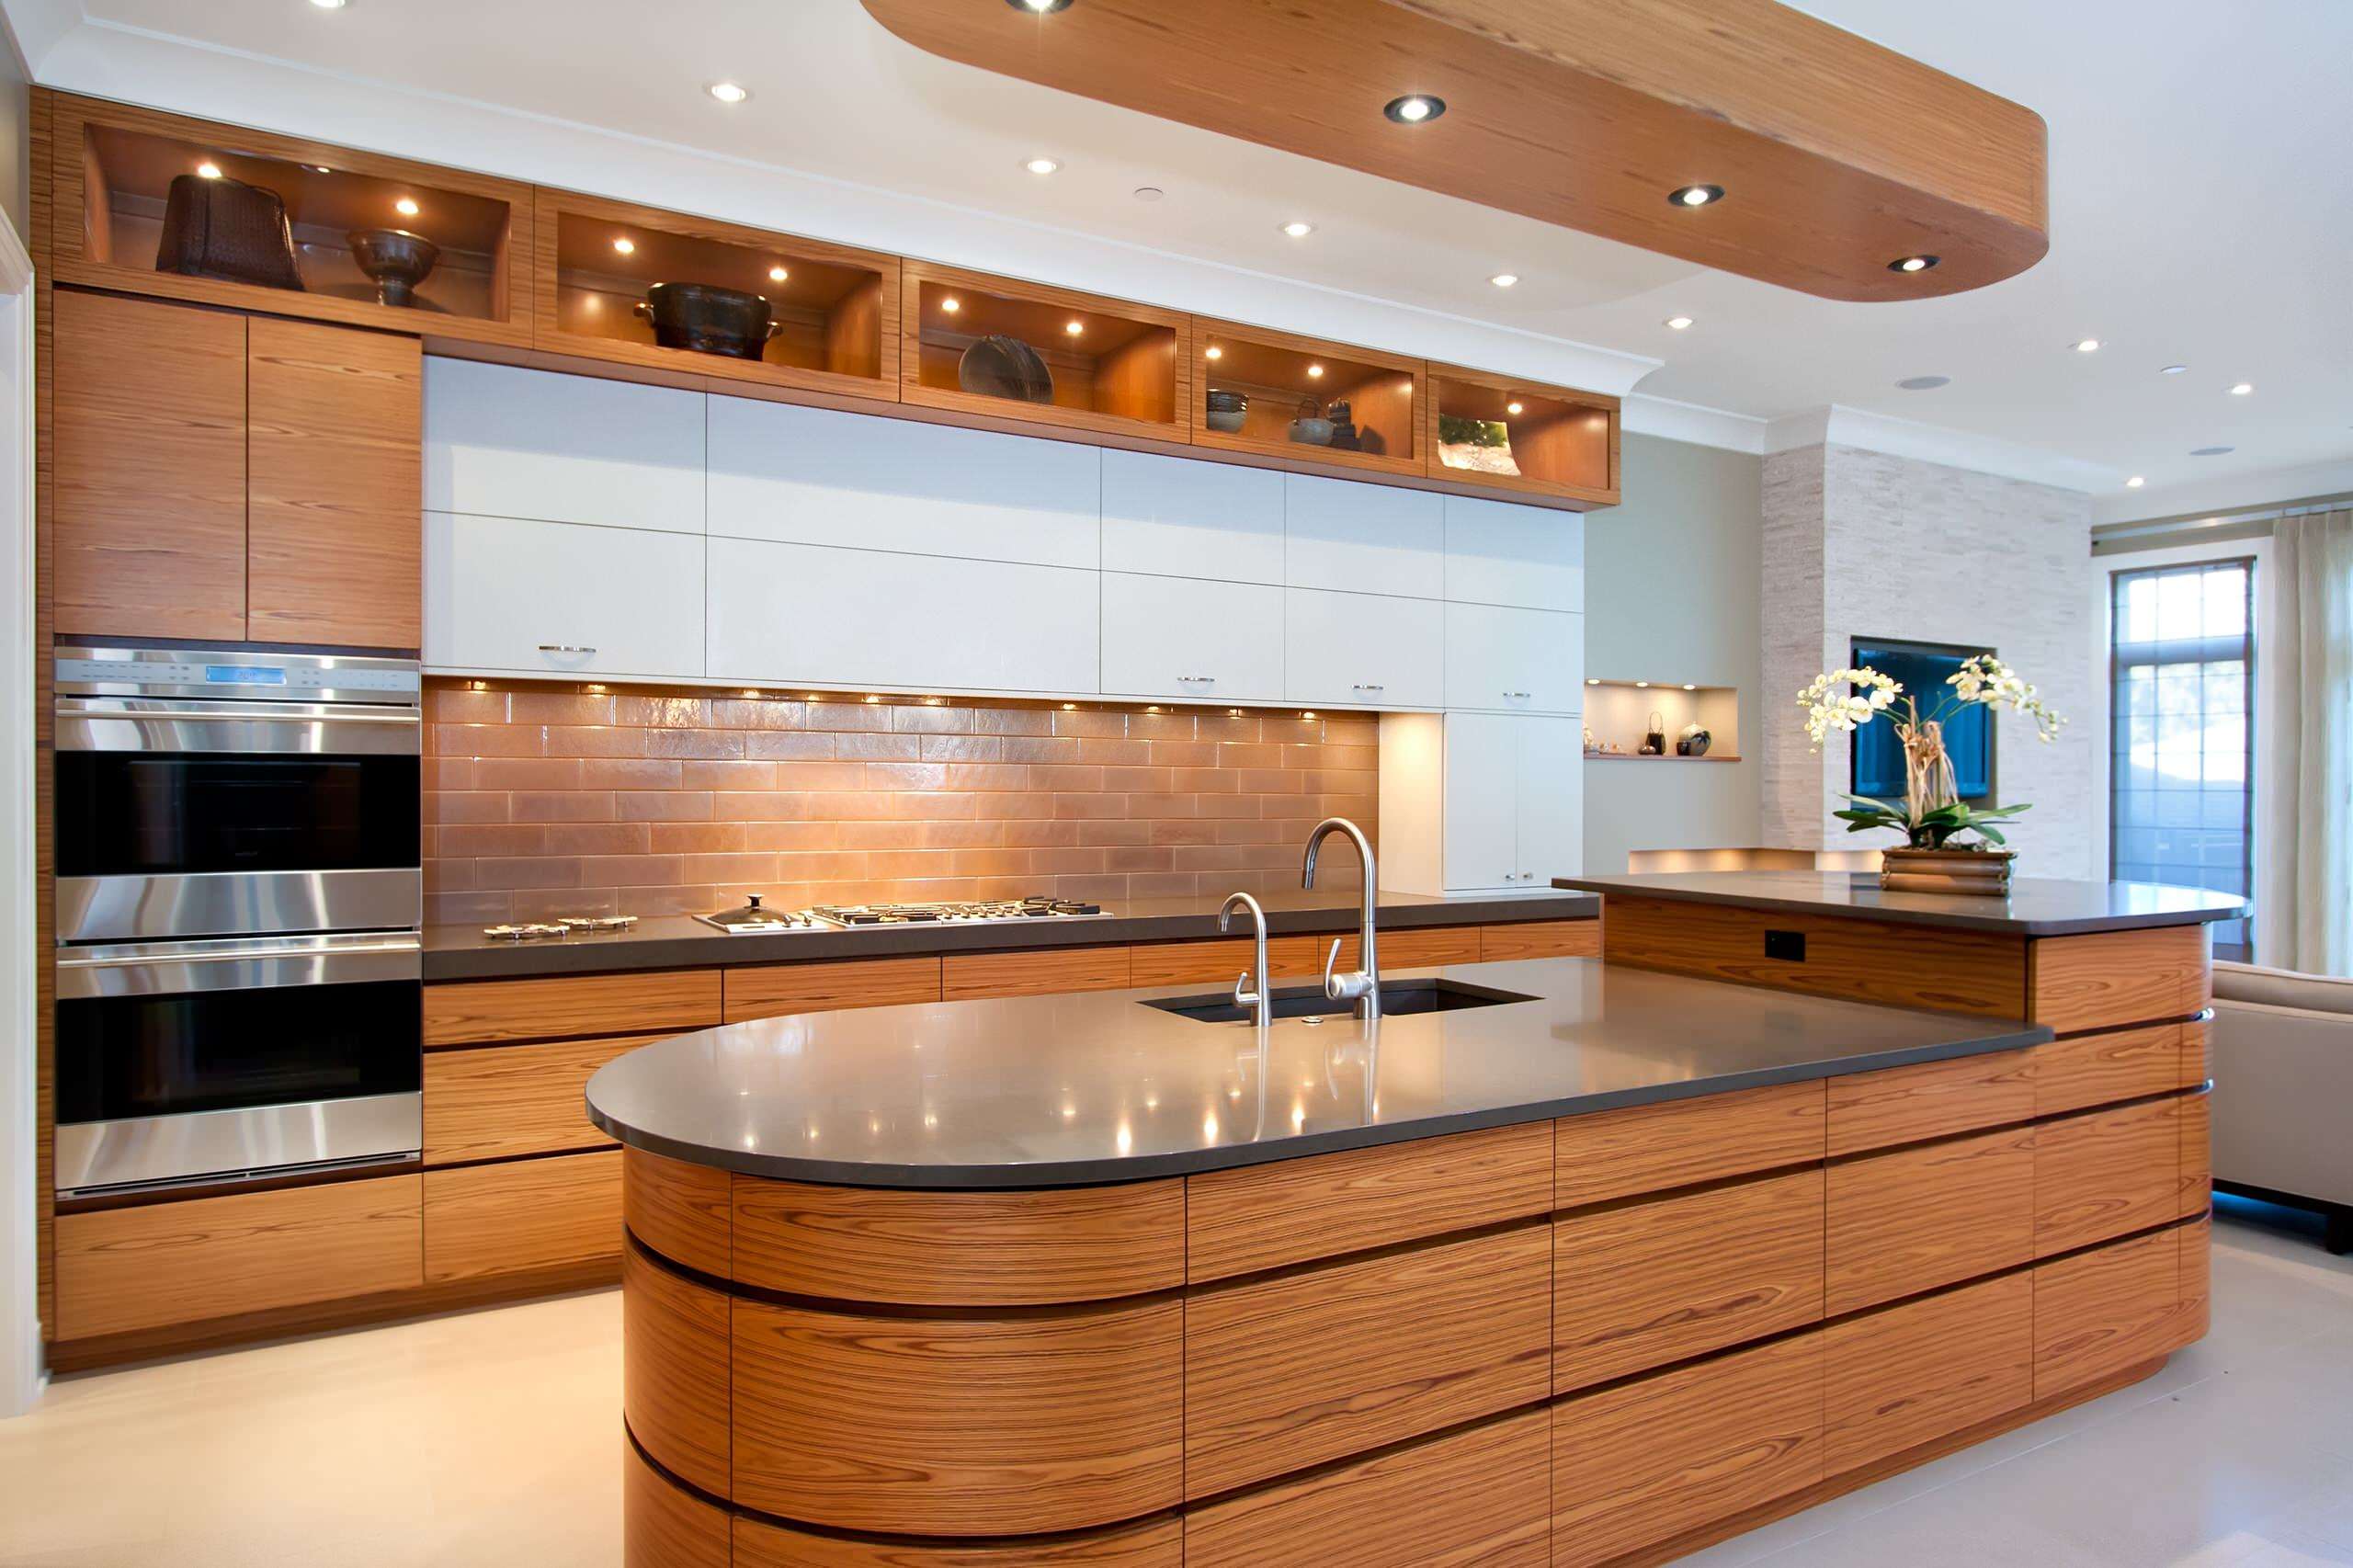 Đảo bếp thiết kế hoàn toàn bằng gỗ tự nhiên, khẳng định được vị thế, đẳng cấp của chủ nhà